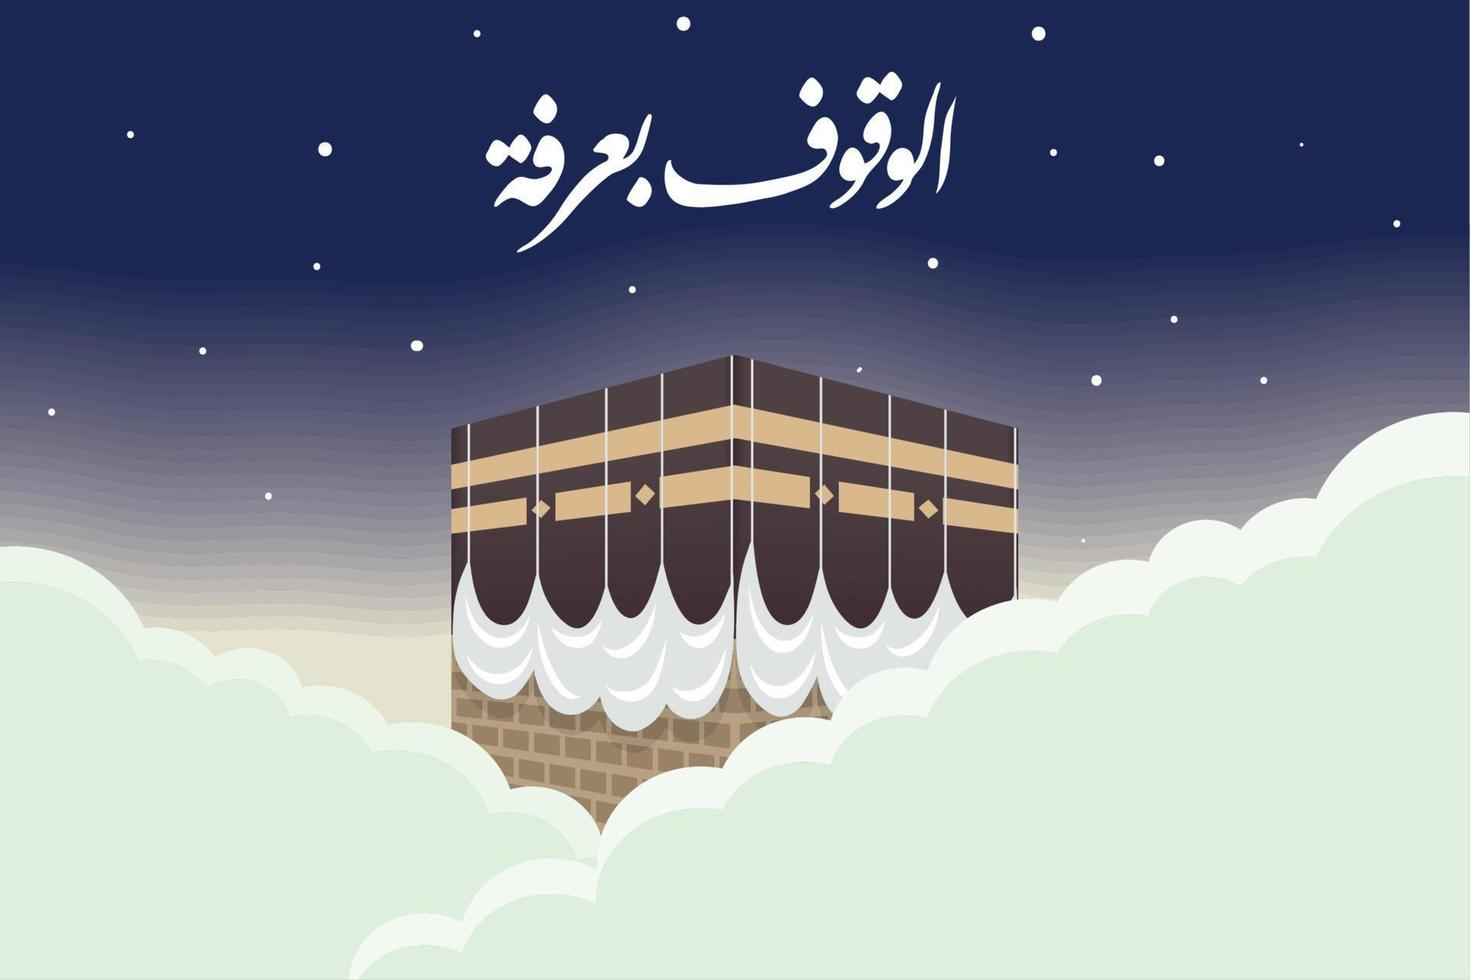 islamico pellegrinaggio lettering cartolina vettore